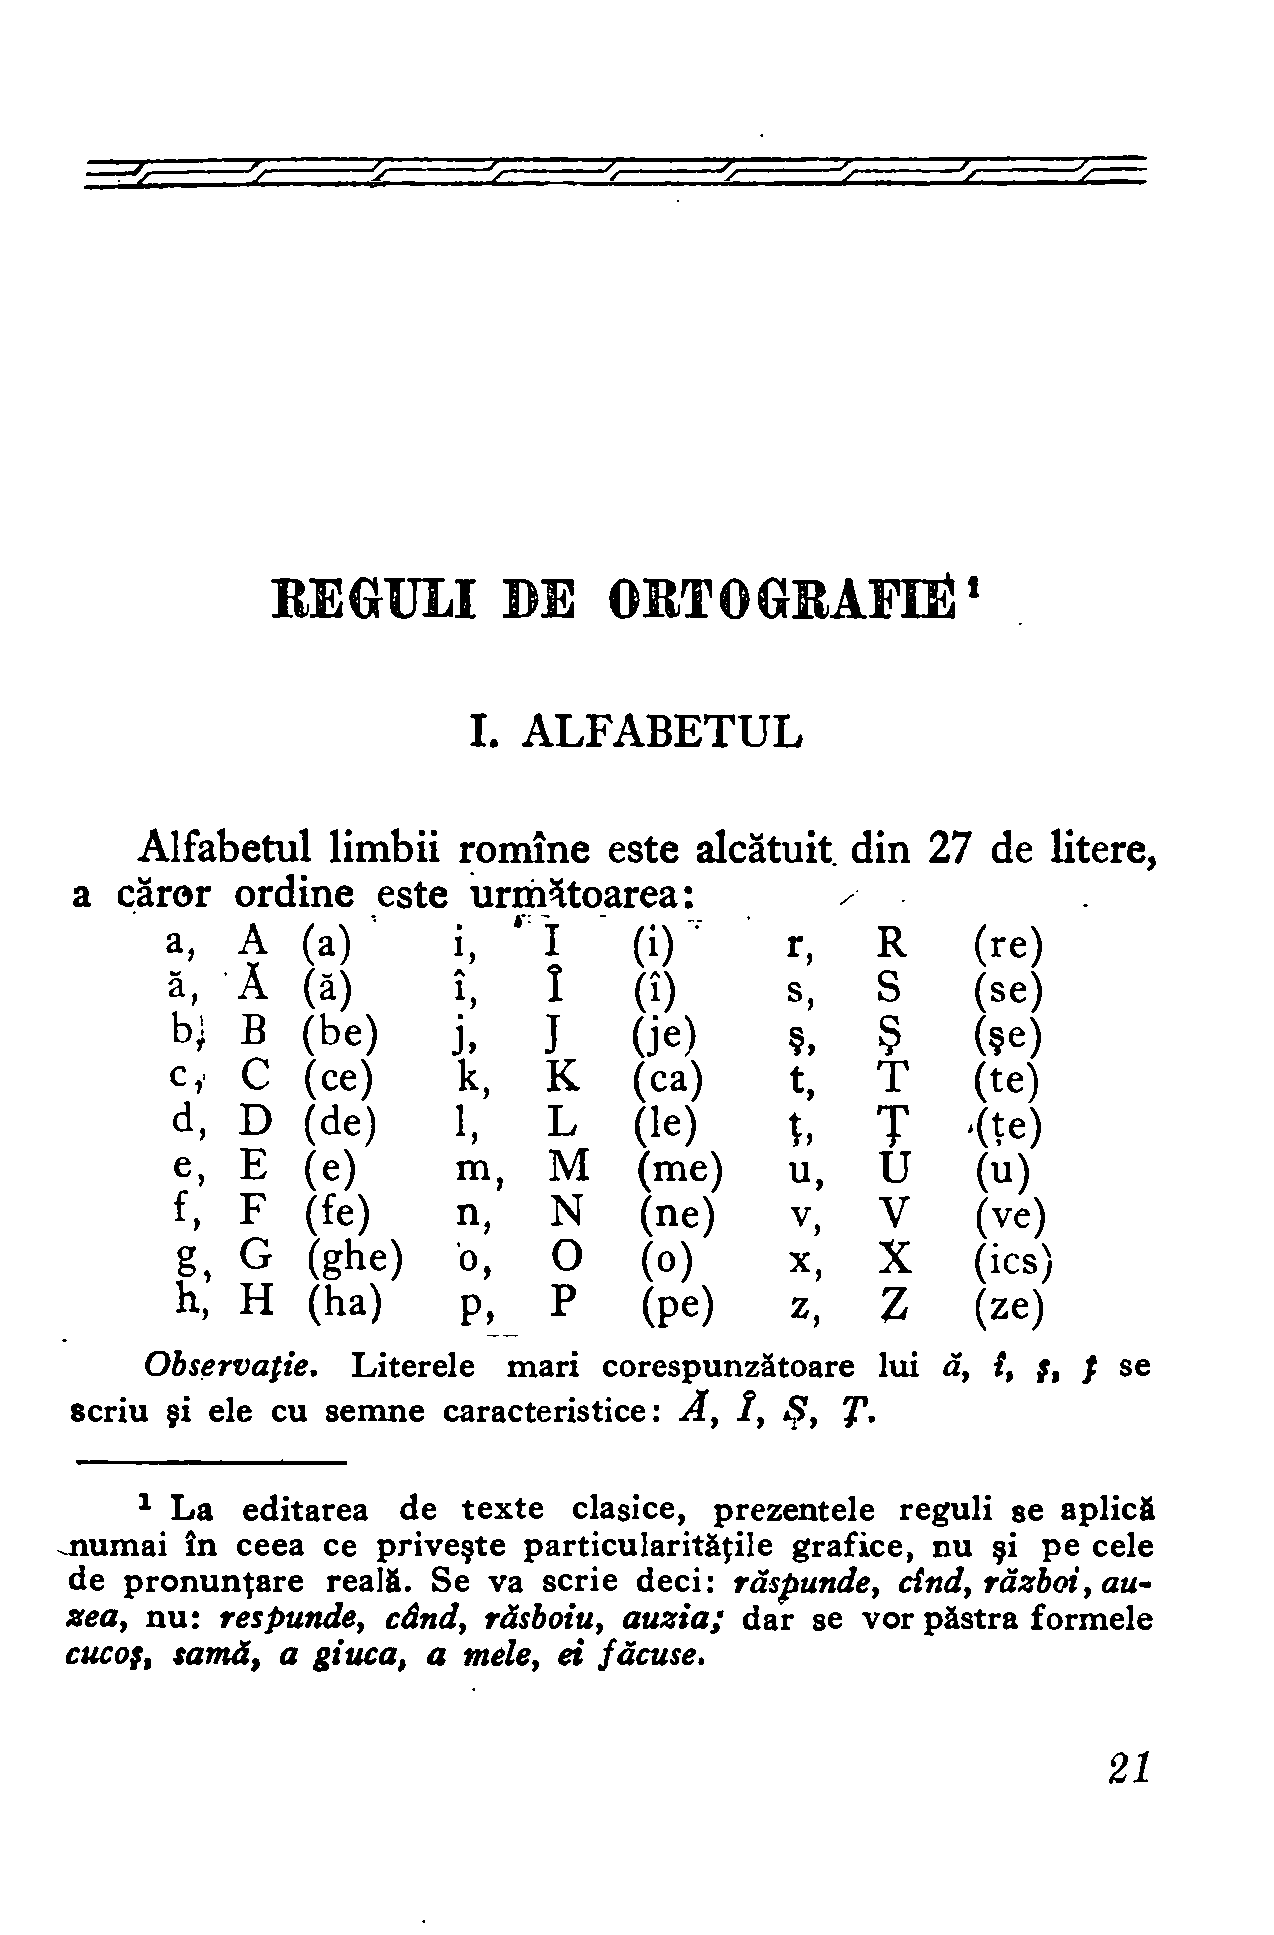 1954 - Mic dicționar ortografic (19).png